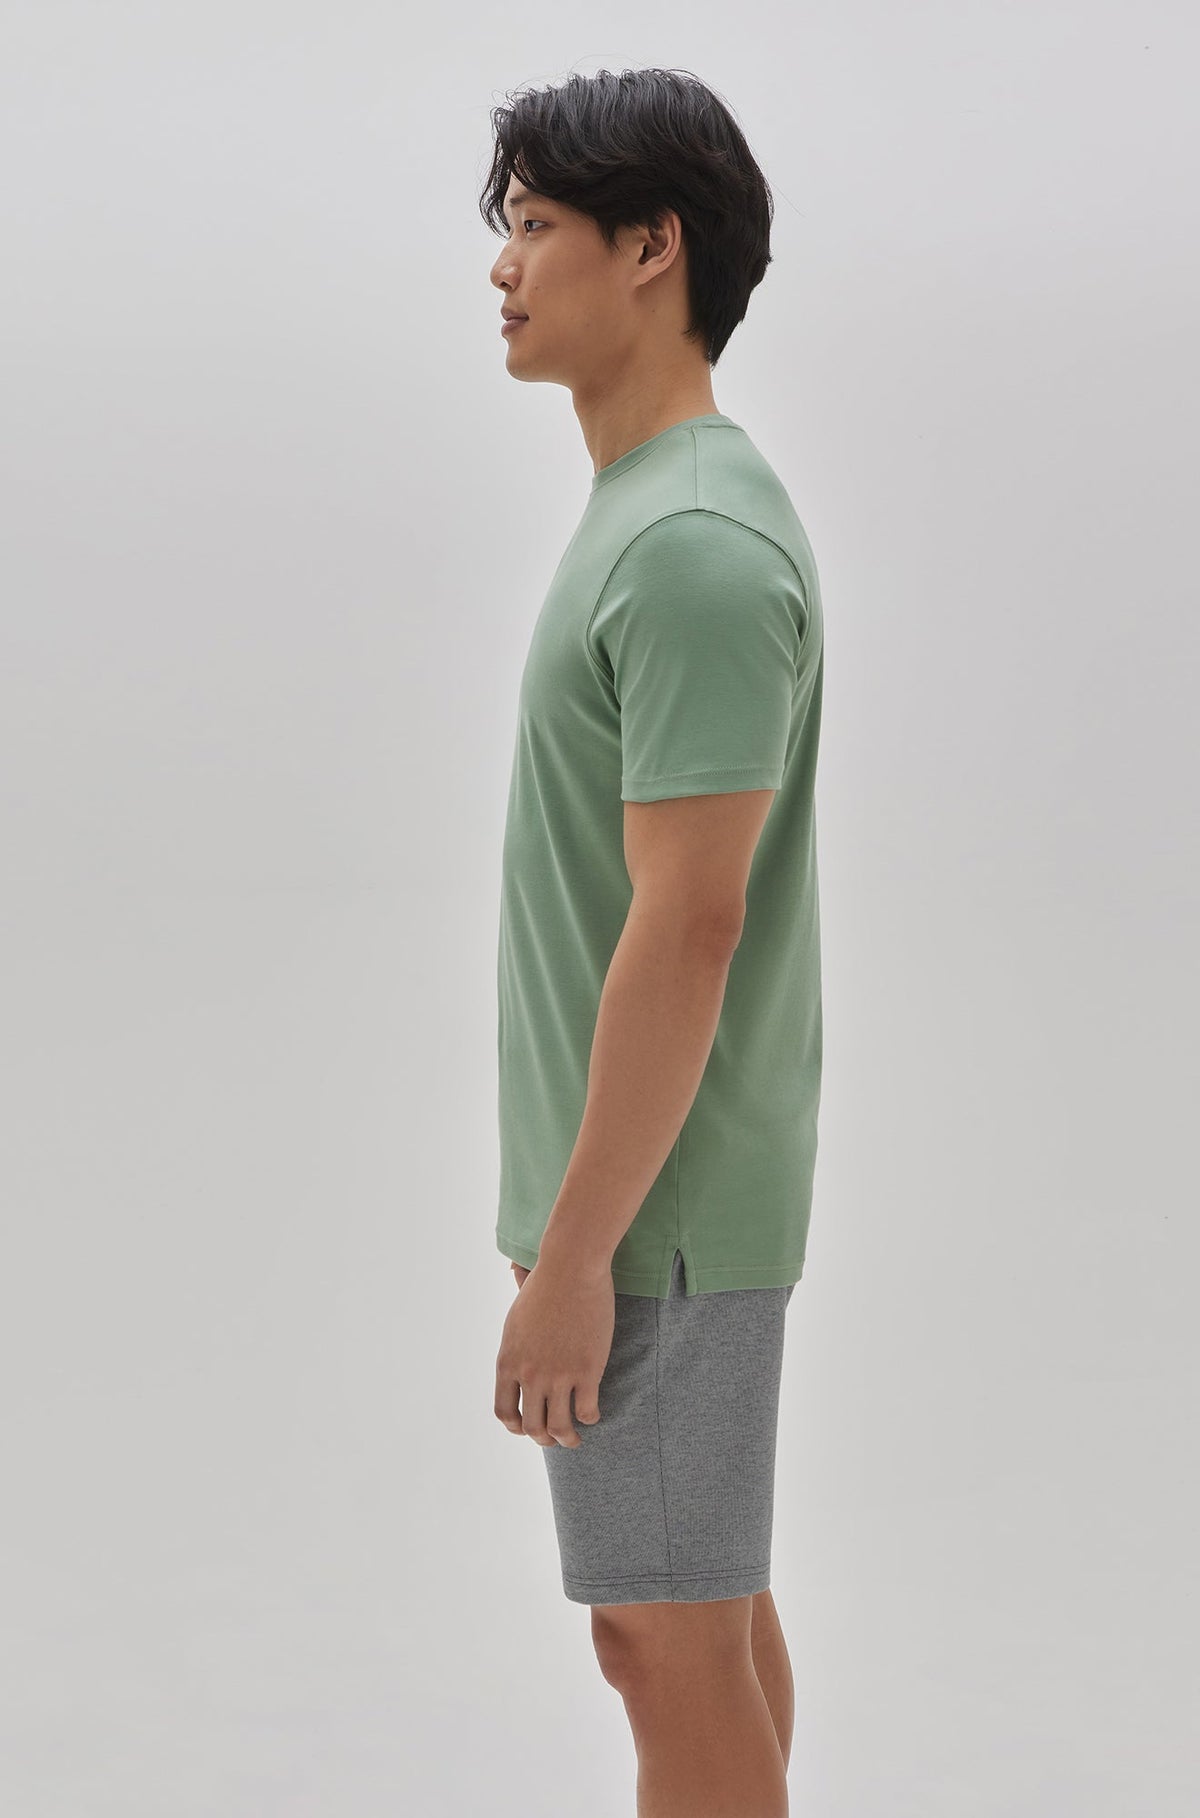 T-Shirt col rond pour homme par Robert Barakett | 23336/Georgia Baie Verte/Green Bay| Machemise.ca, vêtements mode pour hommes